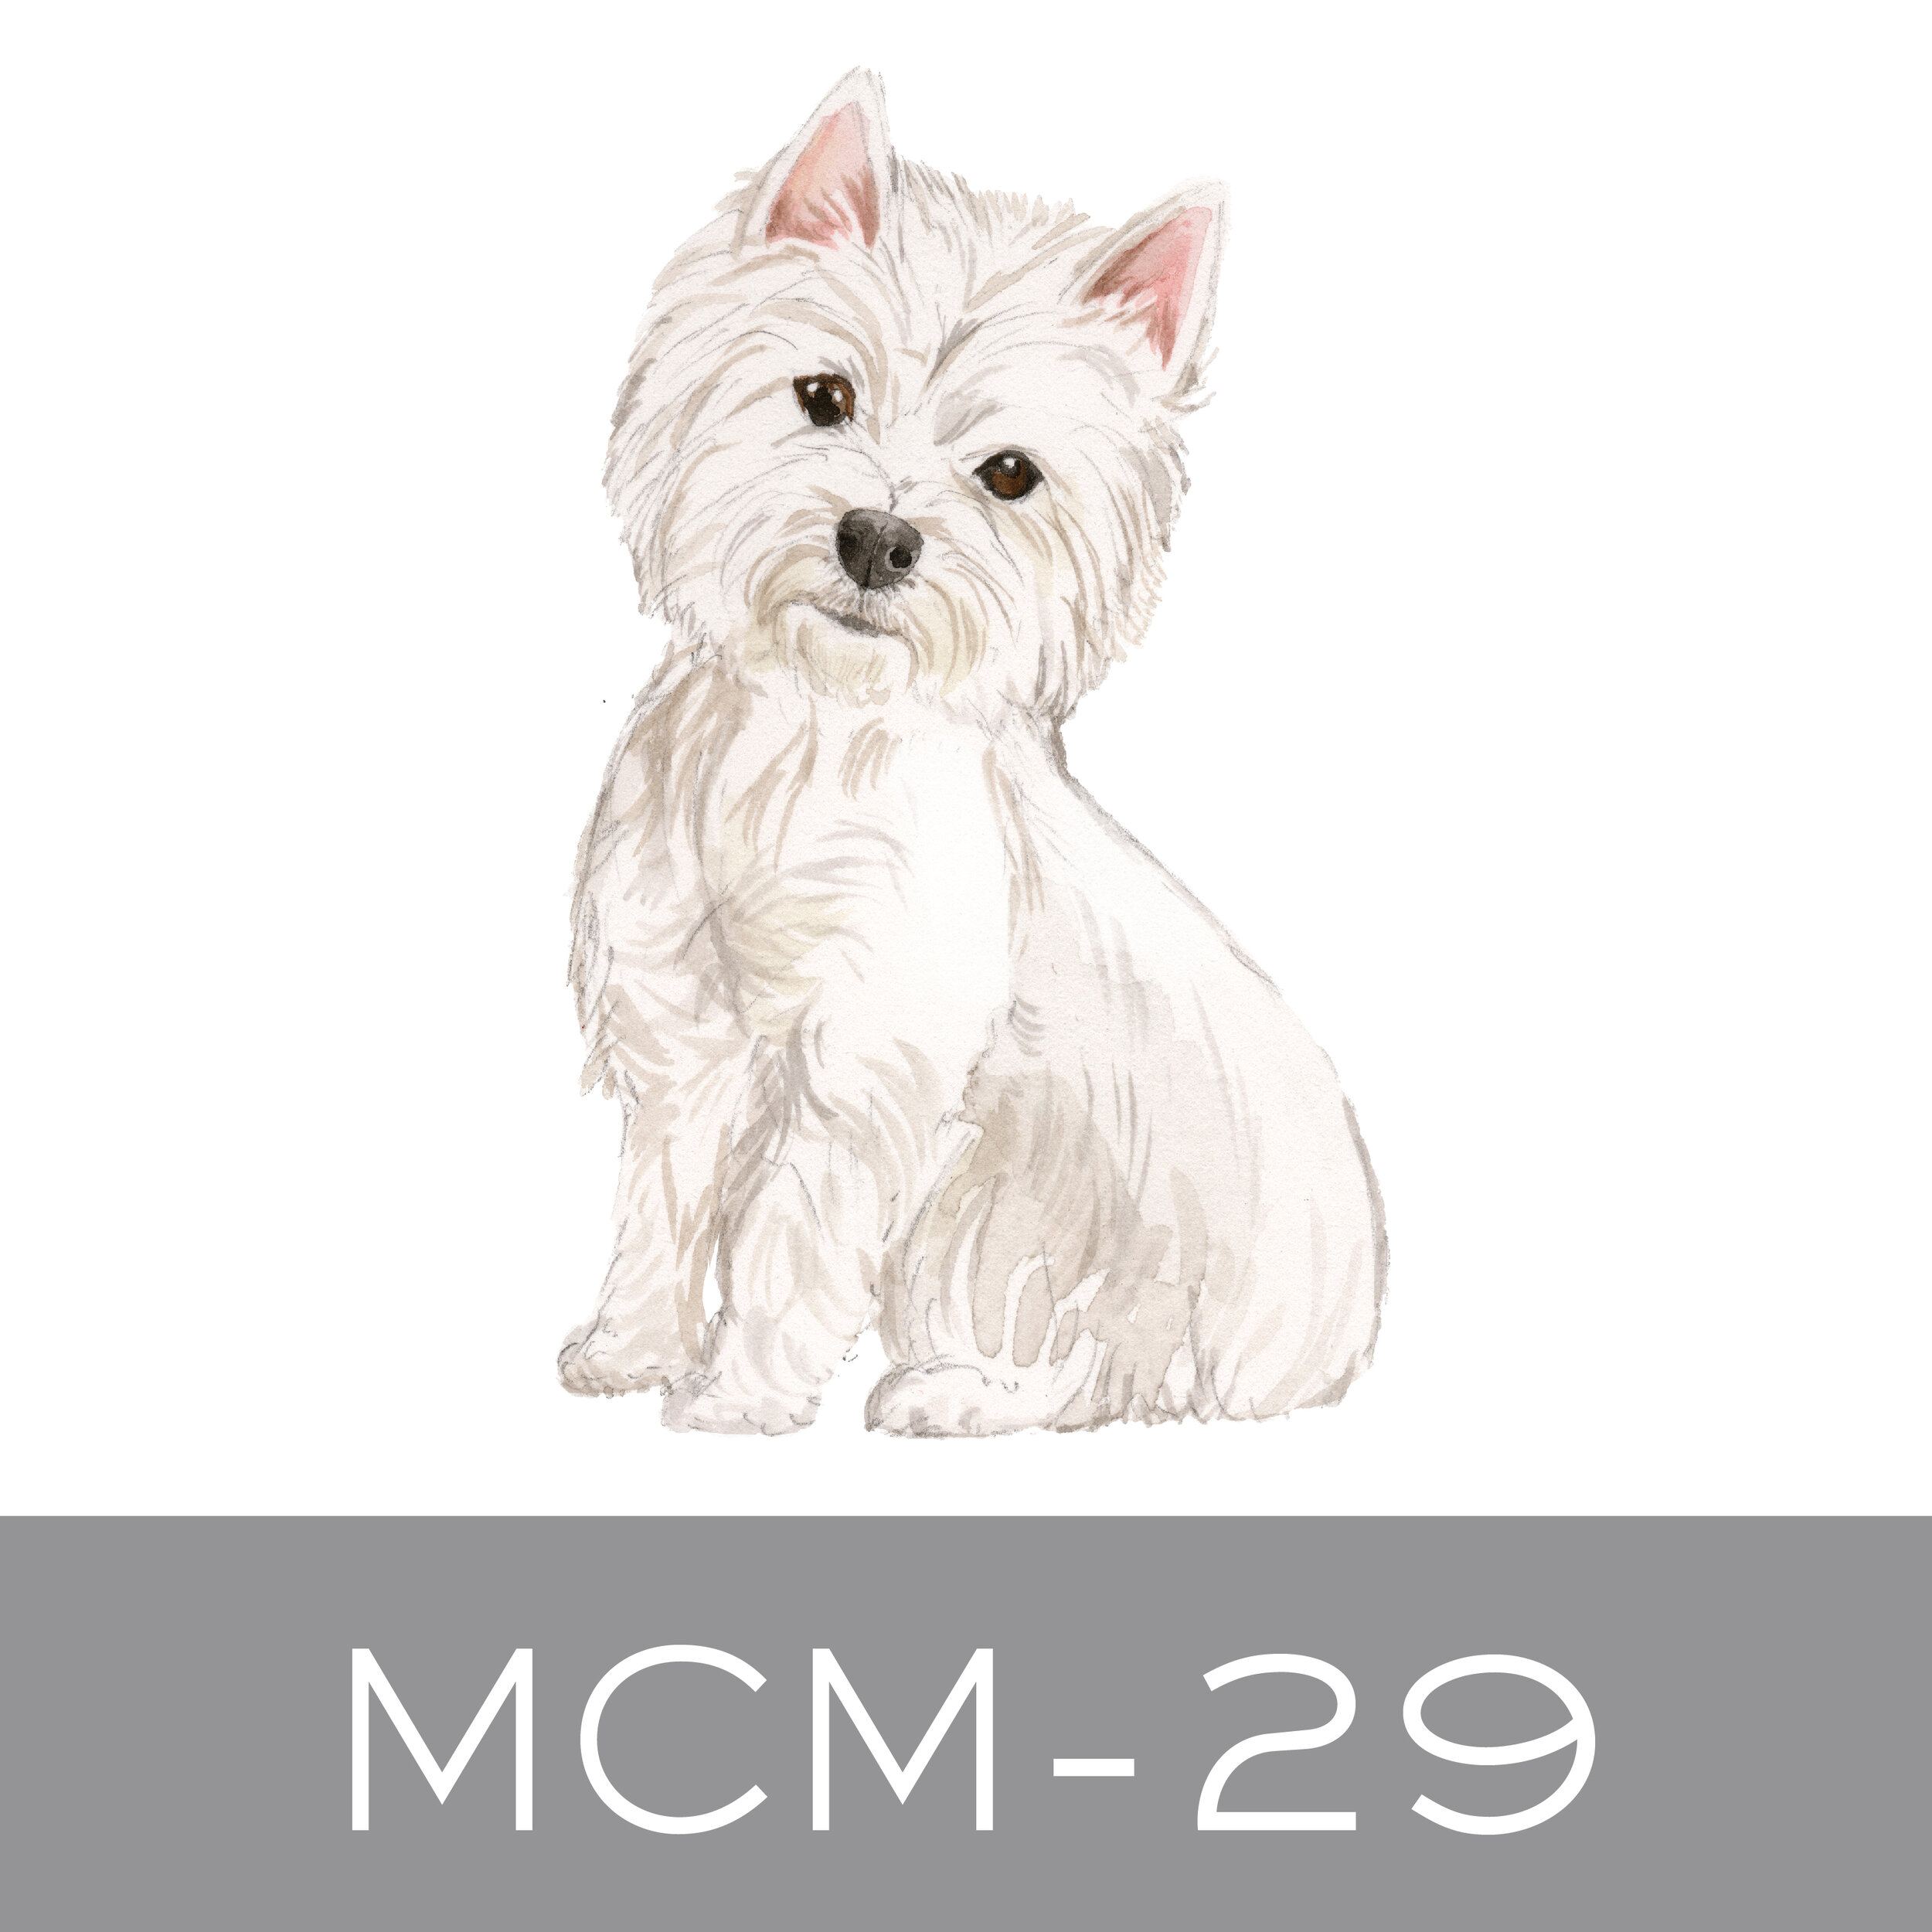 MCM-29.jpg